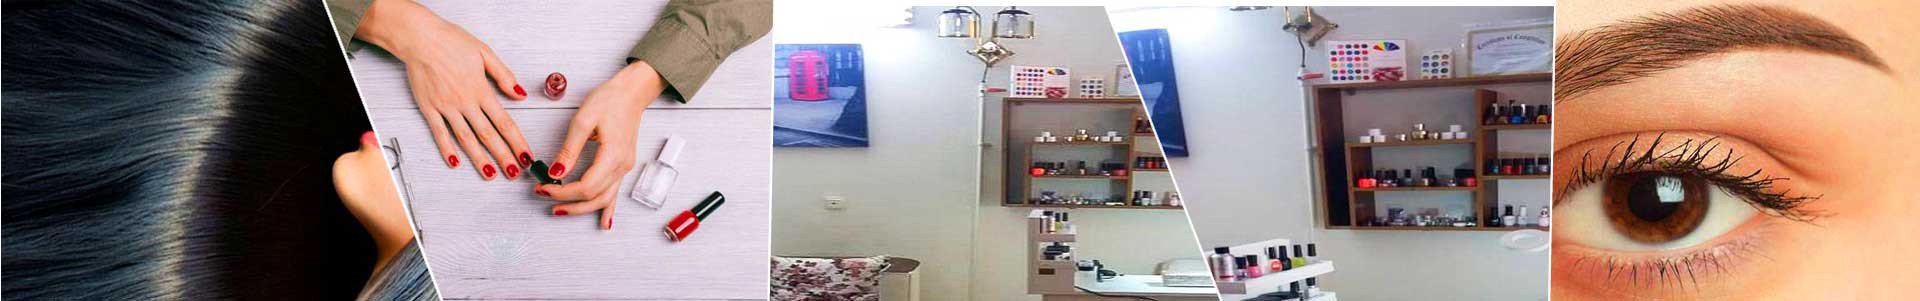 بهترین خرید سالن زیبایی سانی بیوتی کلاب تهران با بیشترین درصد تخفیف در قیمت - 80%